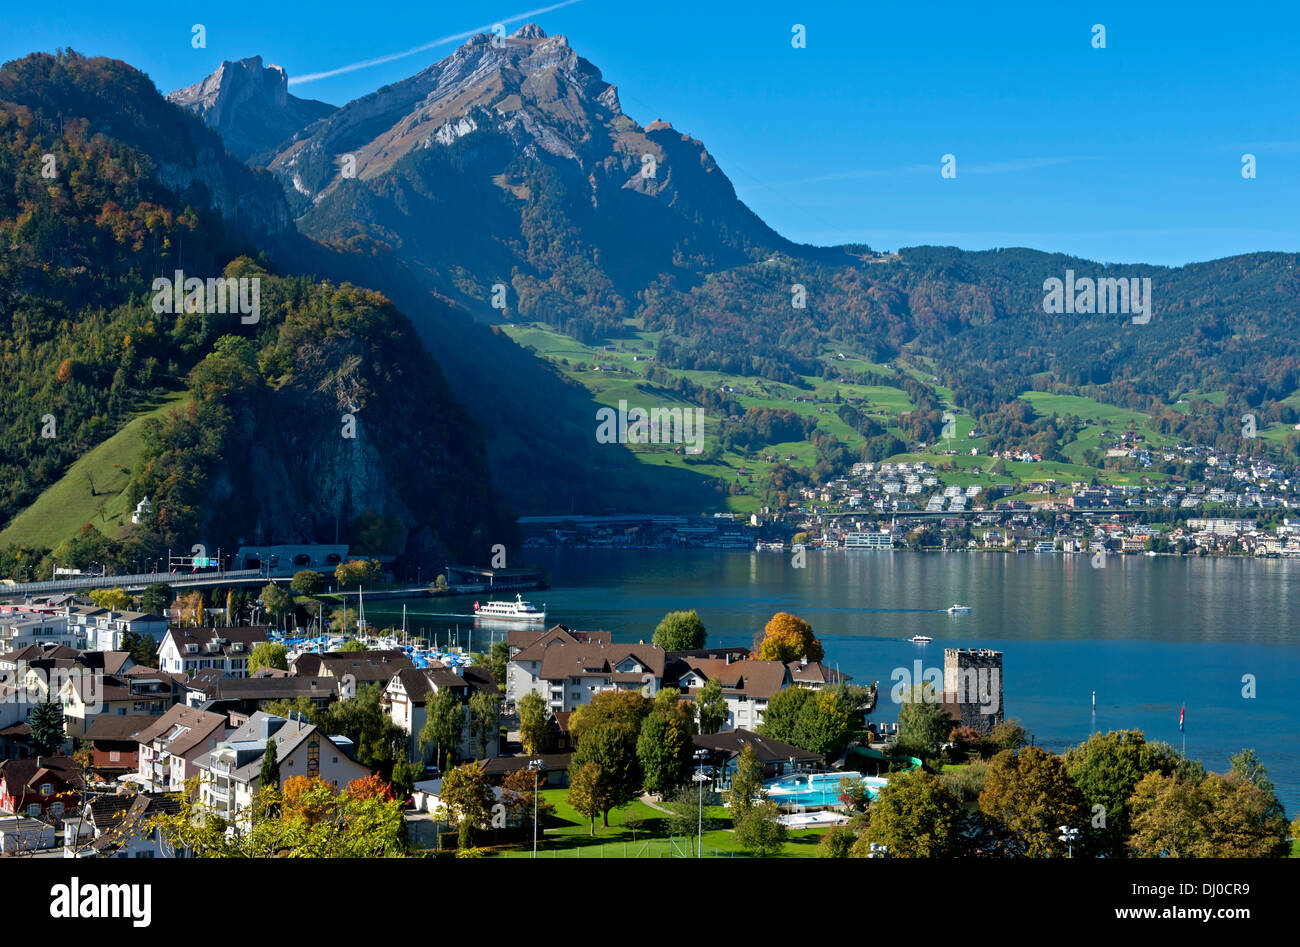 Die Gemeinde Stansstad am Vierwaldstättersee (Vierwaldstättersee) mit dem Pilatus, Kanton Nidwalden. Schweiz Stockfoto